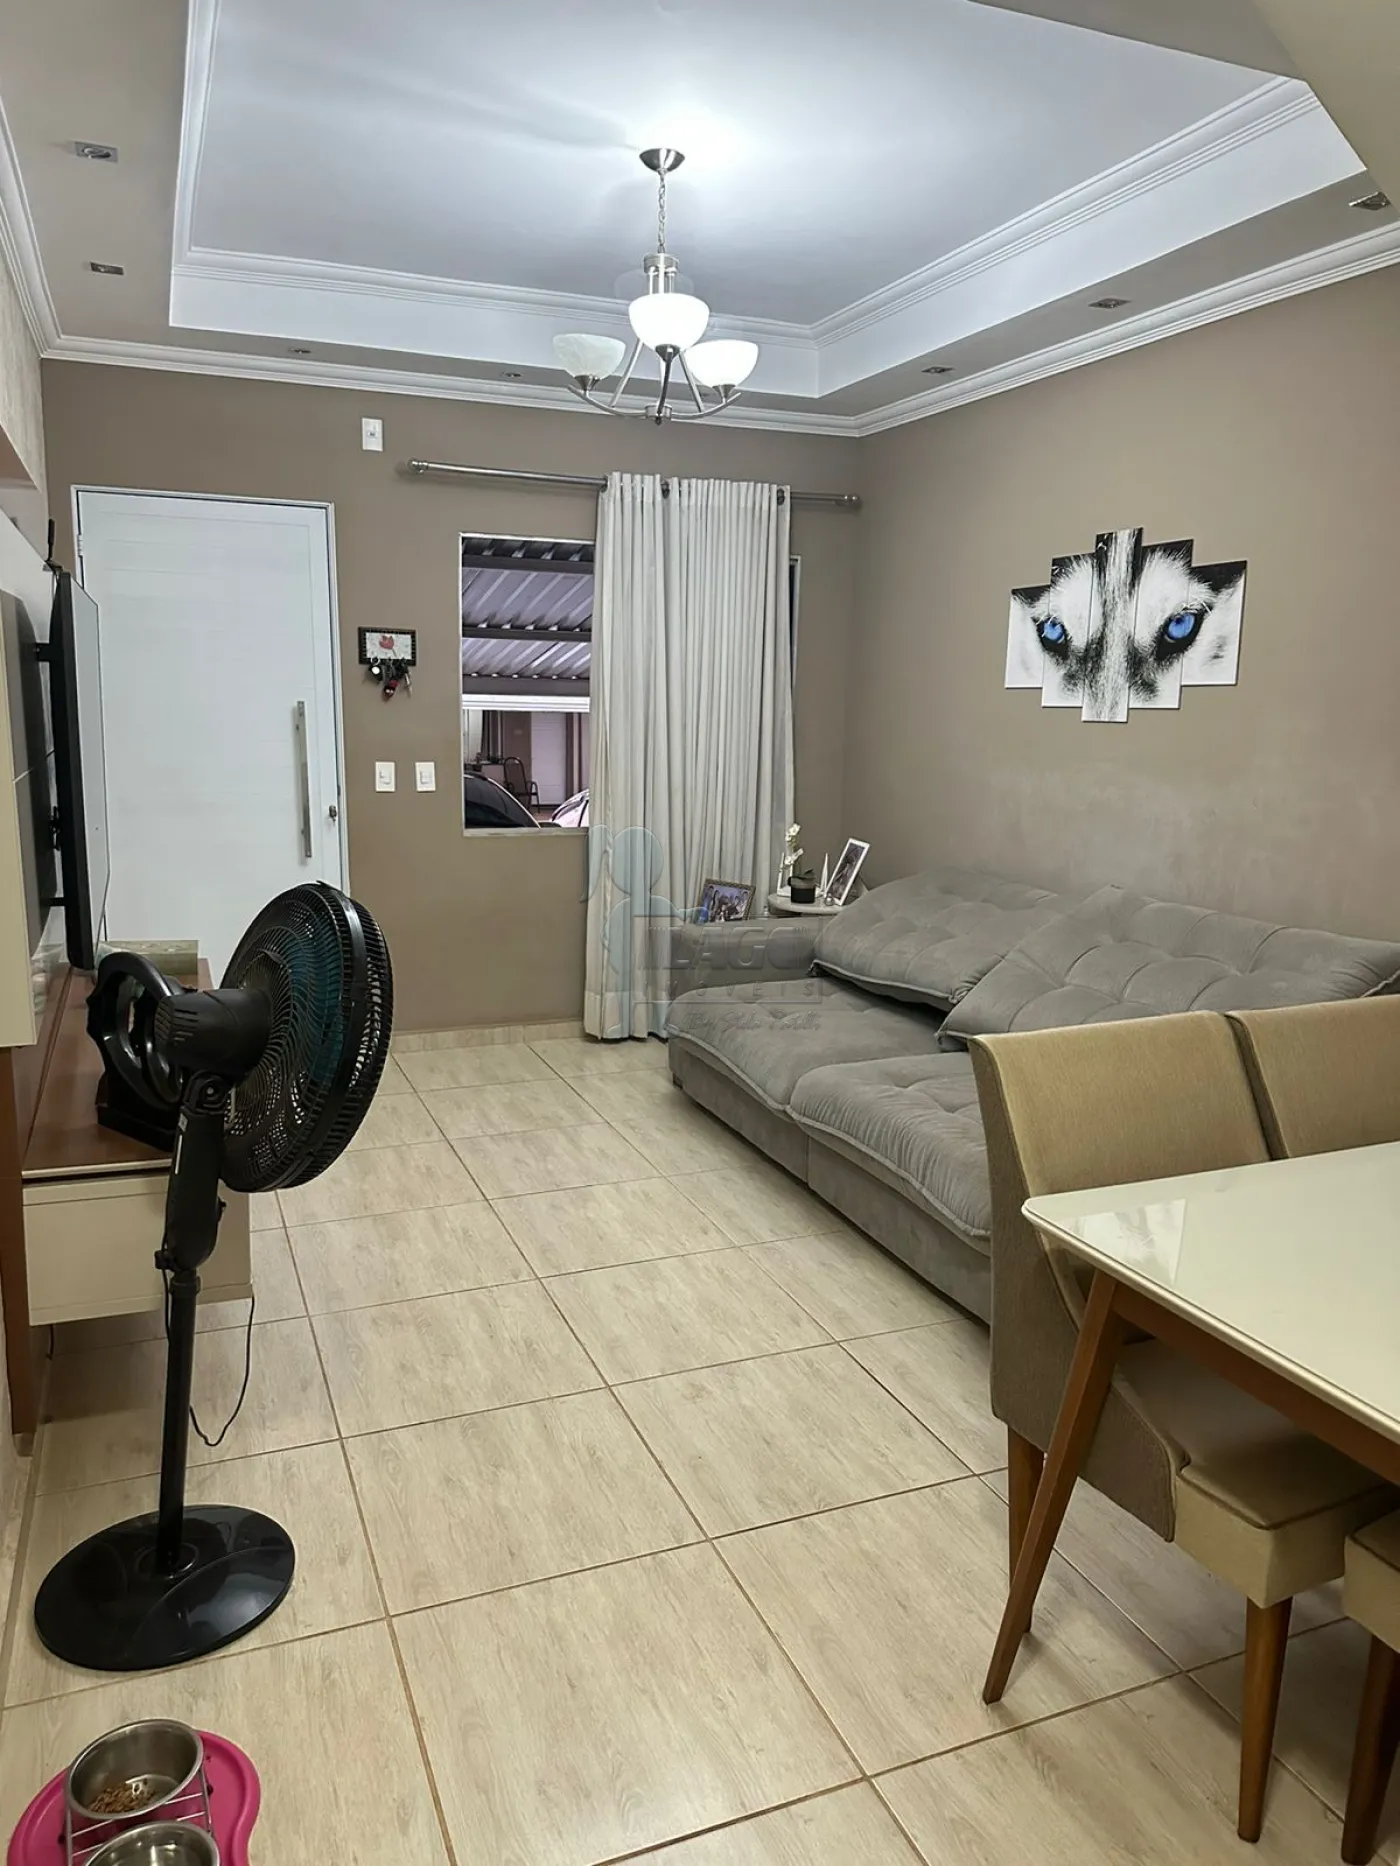 Comprar Casa condomínio / Padrão em Ribeirão Preto R$ 319.200,00 - Foto 3